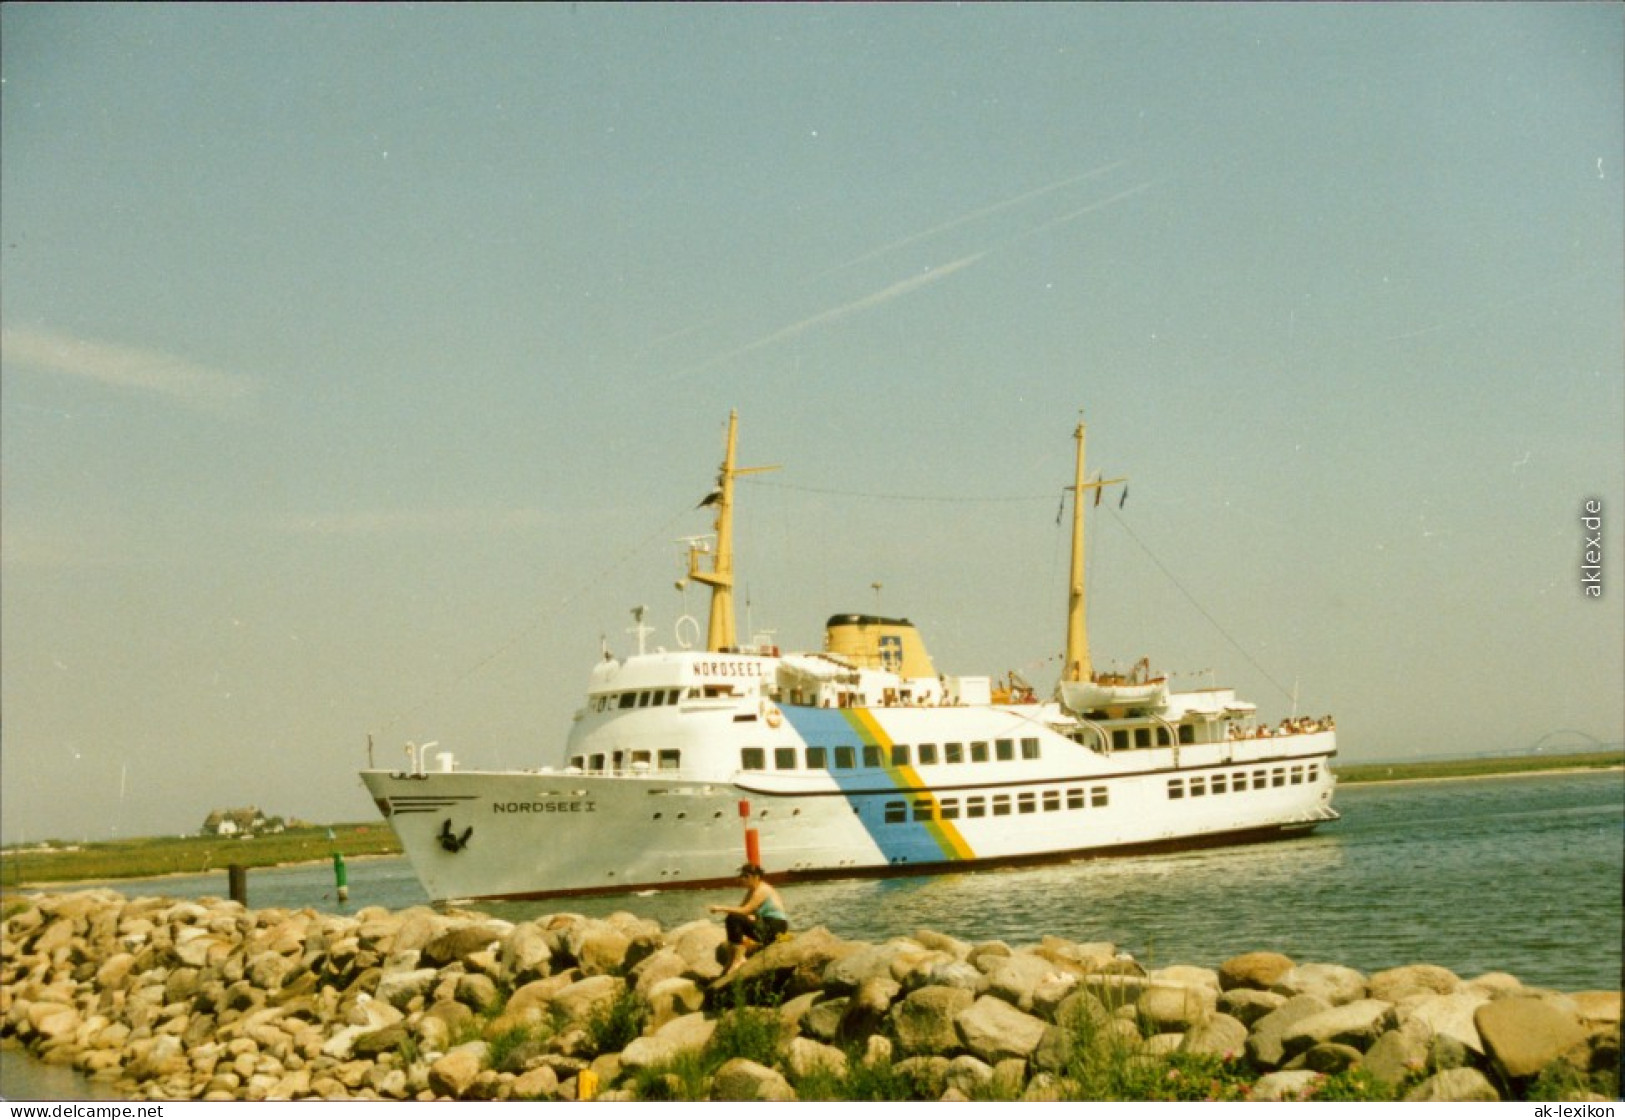 Ansichtskarte  Fährschiff "Nordsee I" 1999 Privatfoto  - Ferries